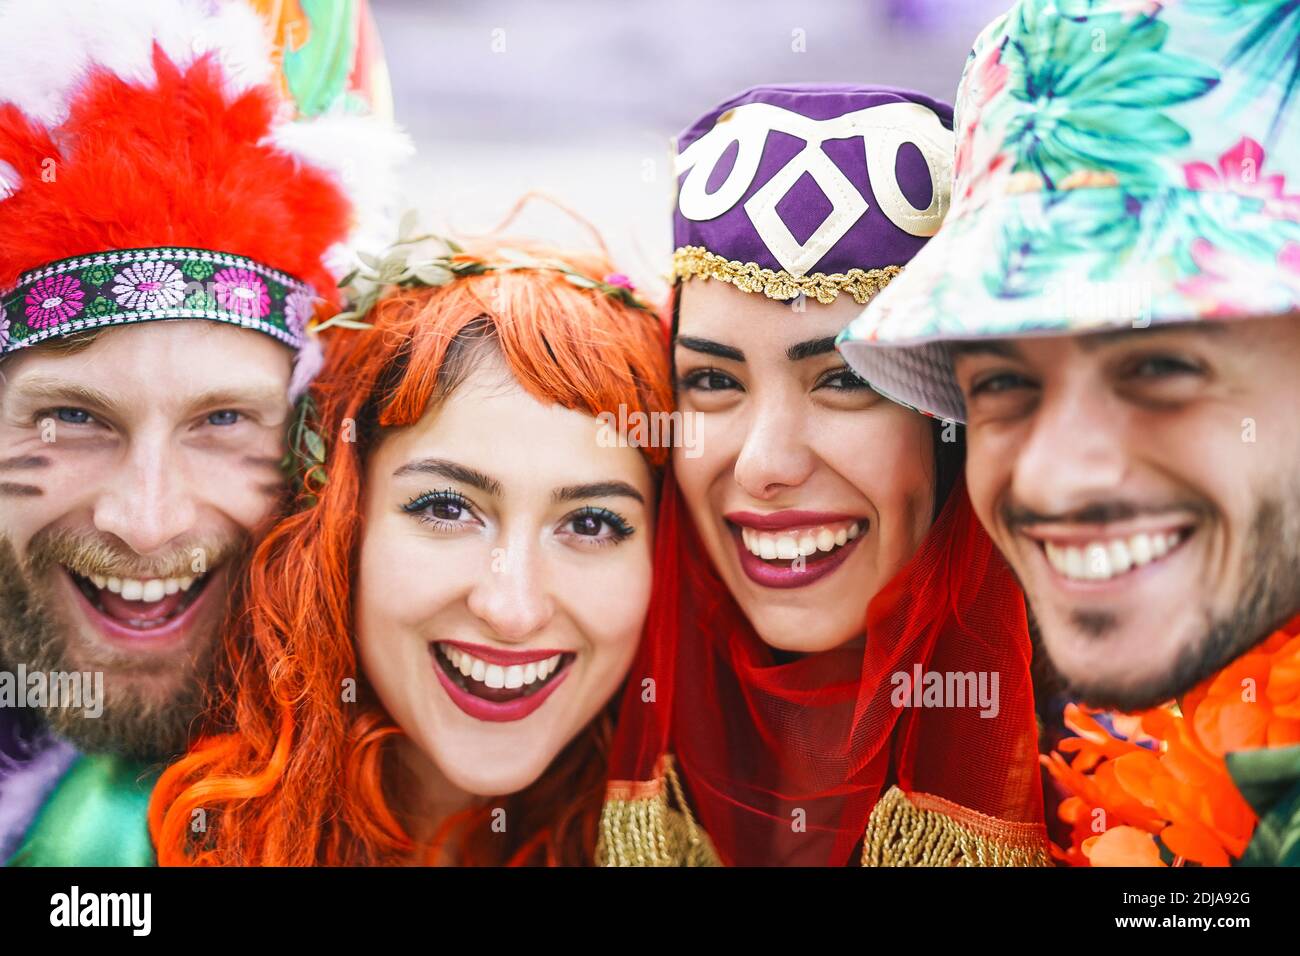 Des amis heureux célébrant la fête du carnaval en plein air - Portrait jeune fou les gens s'amusent avec des costumes amusants Banque D'Images